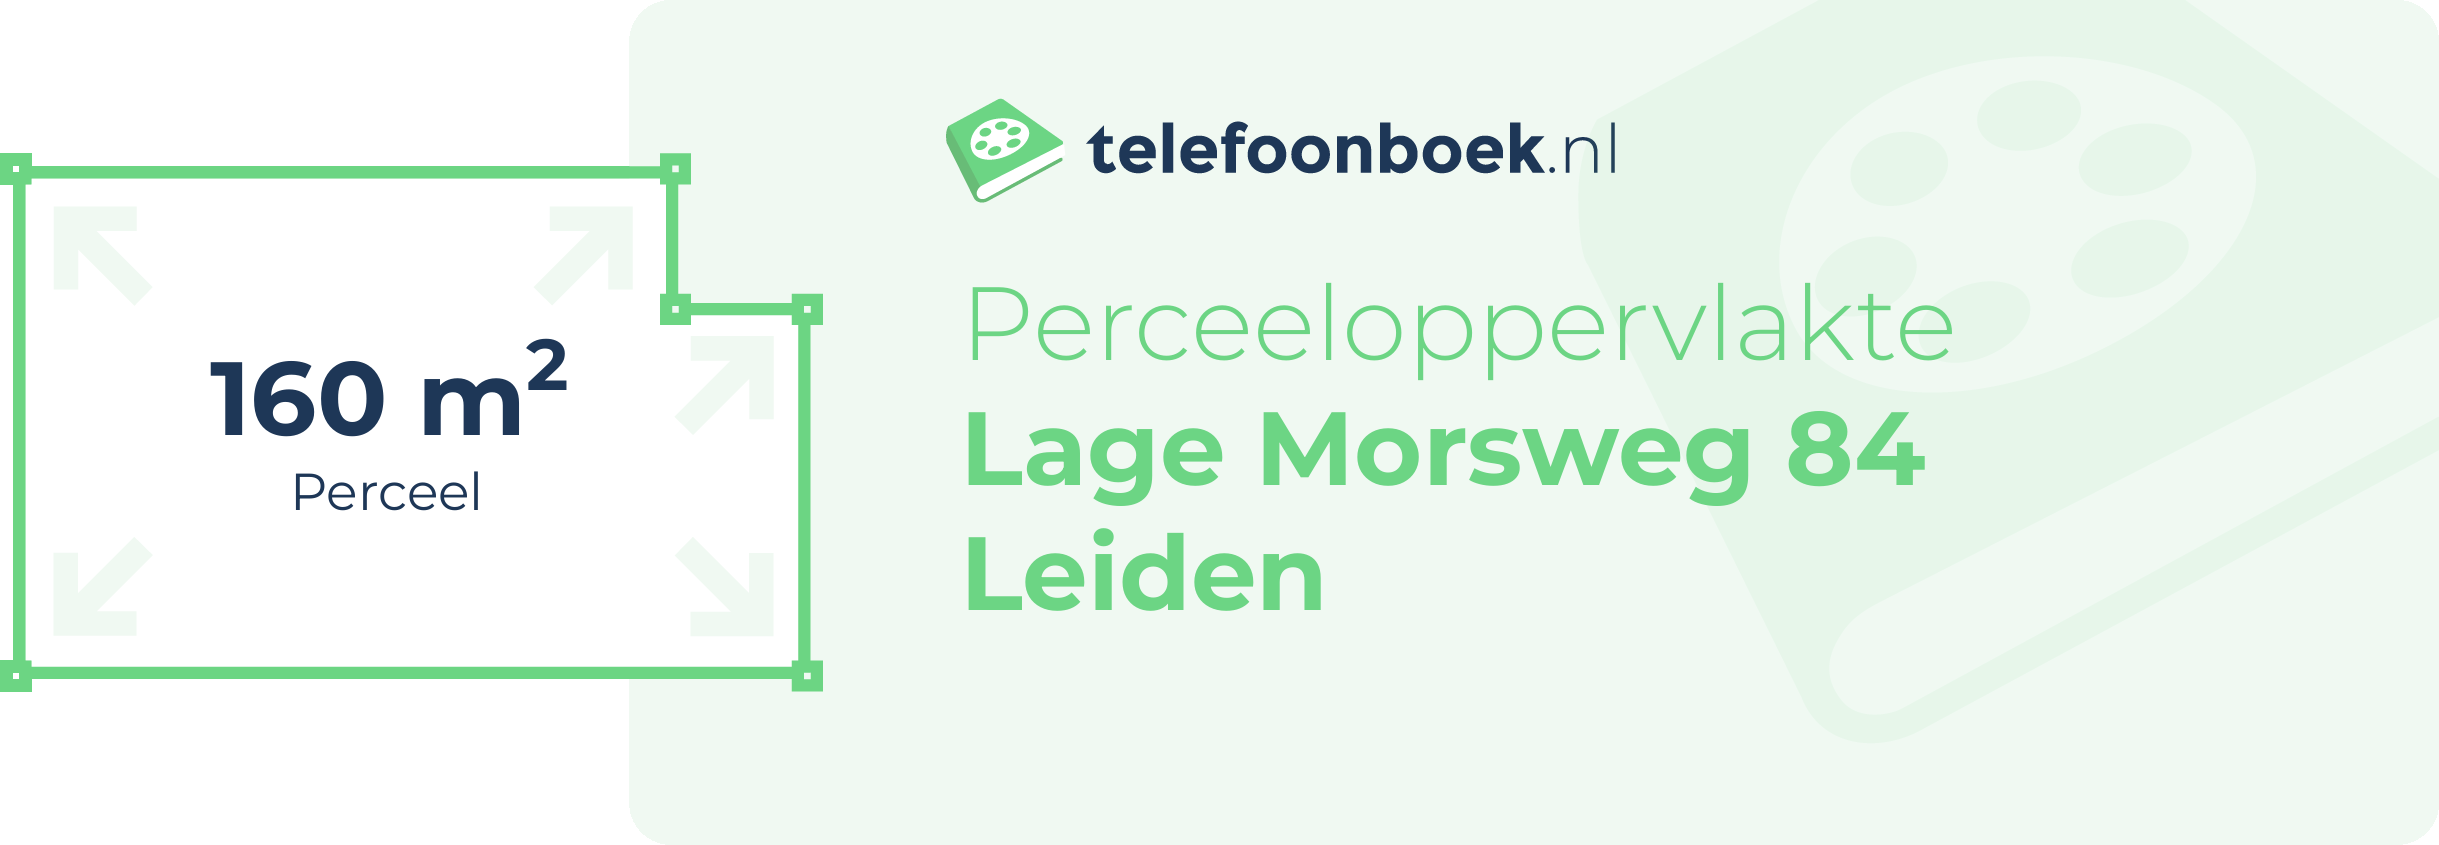 Perceeloppervlakte Lage Morsweg 84 Leiden